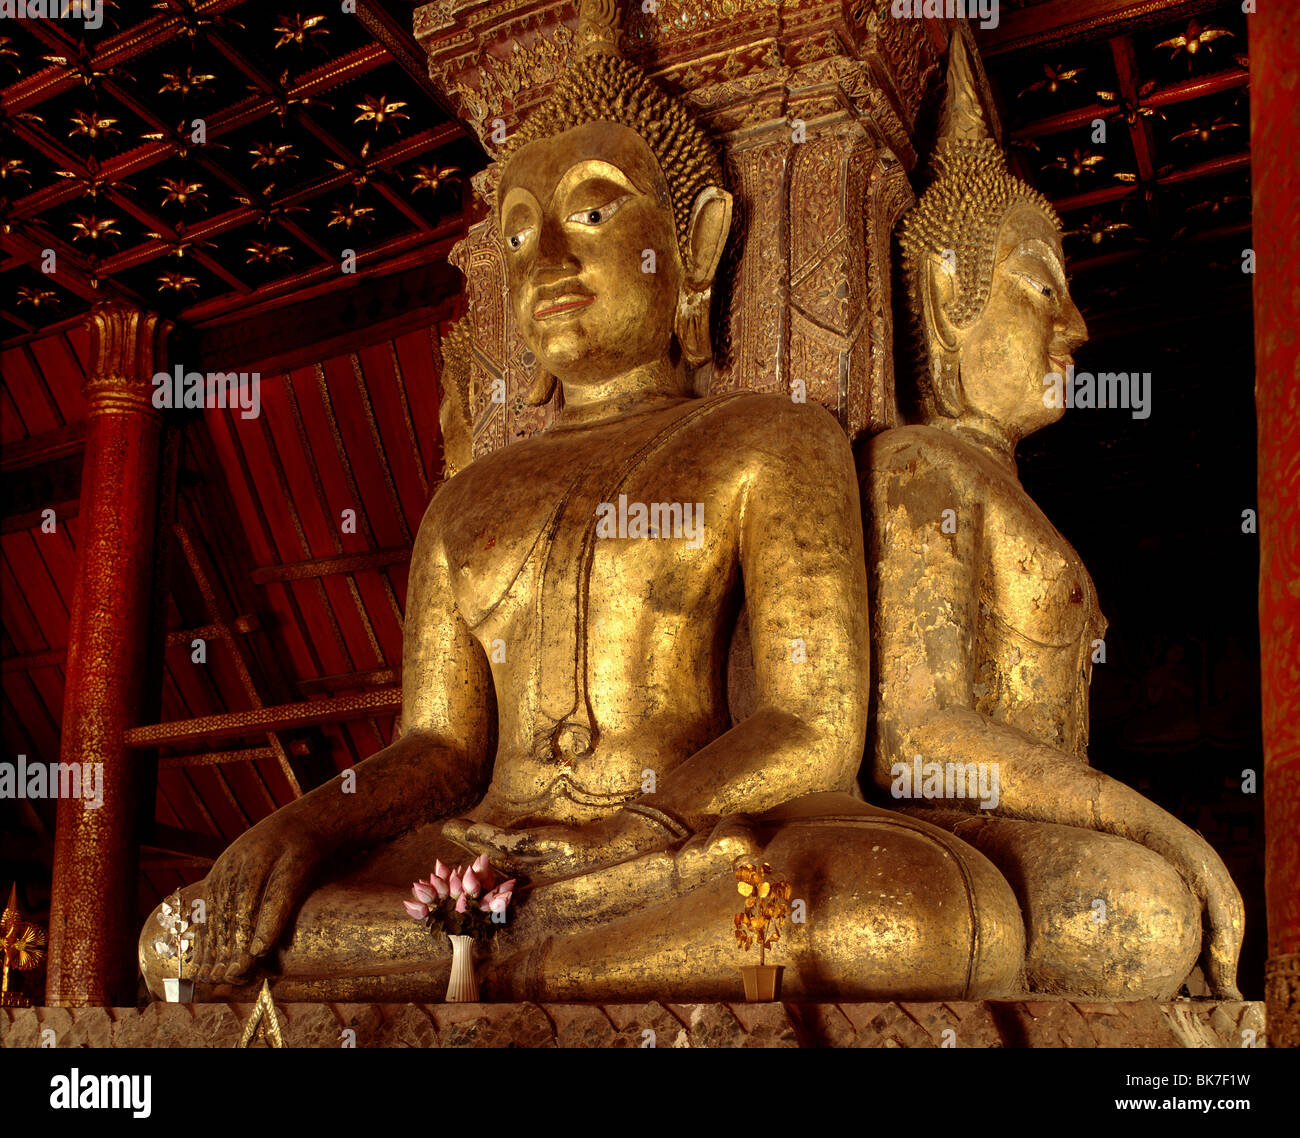 Images de bouddha, Wat Phumin, ville de Nan, Thaïlande, Asie du Sud-Est, Asie&# 10, Banque D'Images